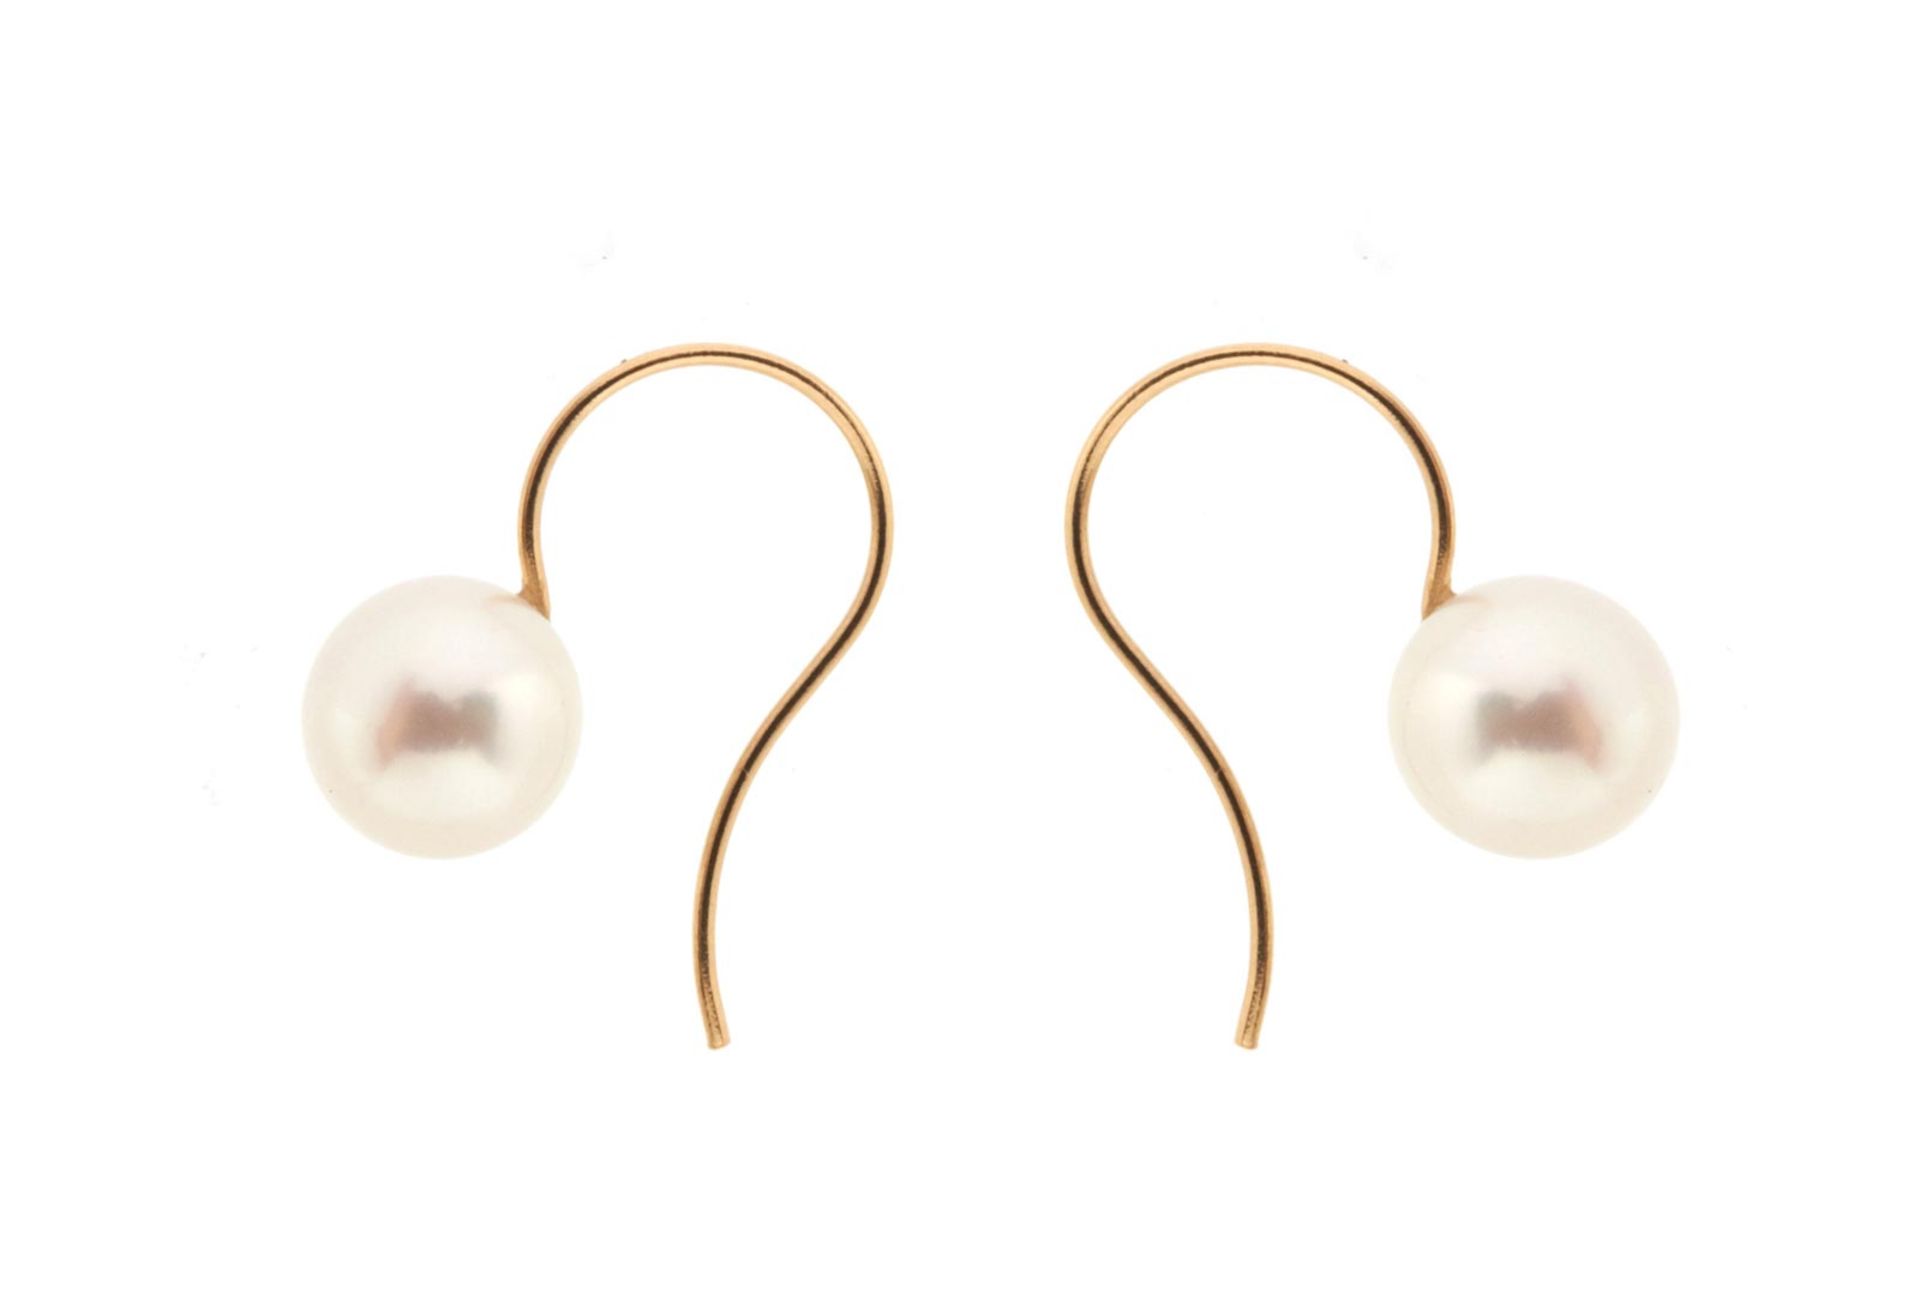 EARRINGS Montura en oro de 18 kl. con dos perlas cultivadas esféricas de 9,5-10 mm. de diámetro y